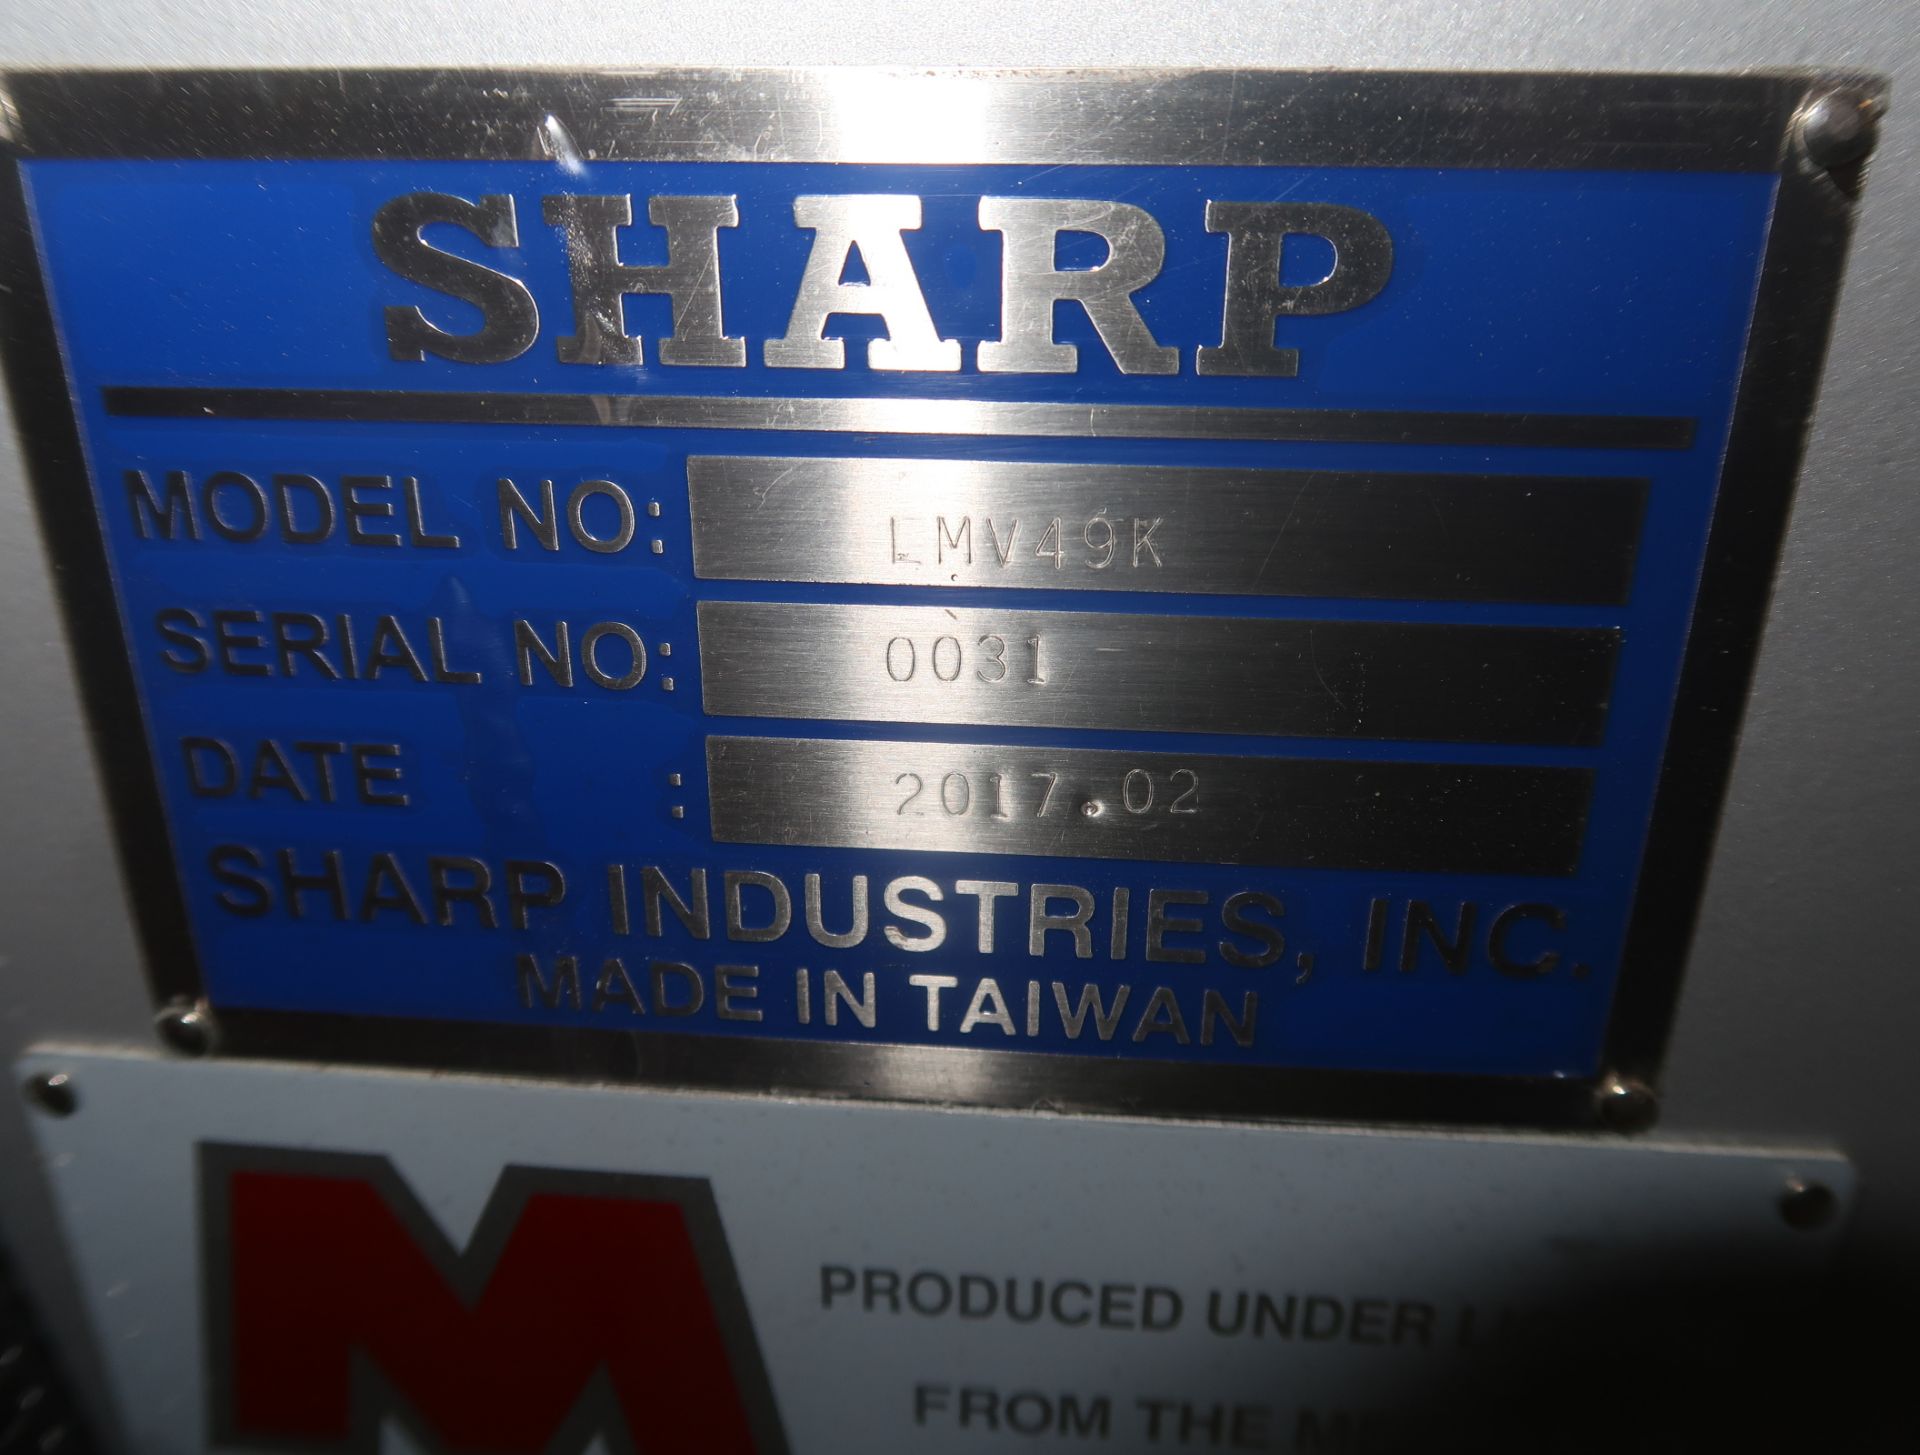 SHARP LMV-49K PREMIER MILL PACKAGE DRO, DVS HEAD & POWER FEED MDL. LMV-49K SN. 0031 (NEW) - Image 6 of 7